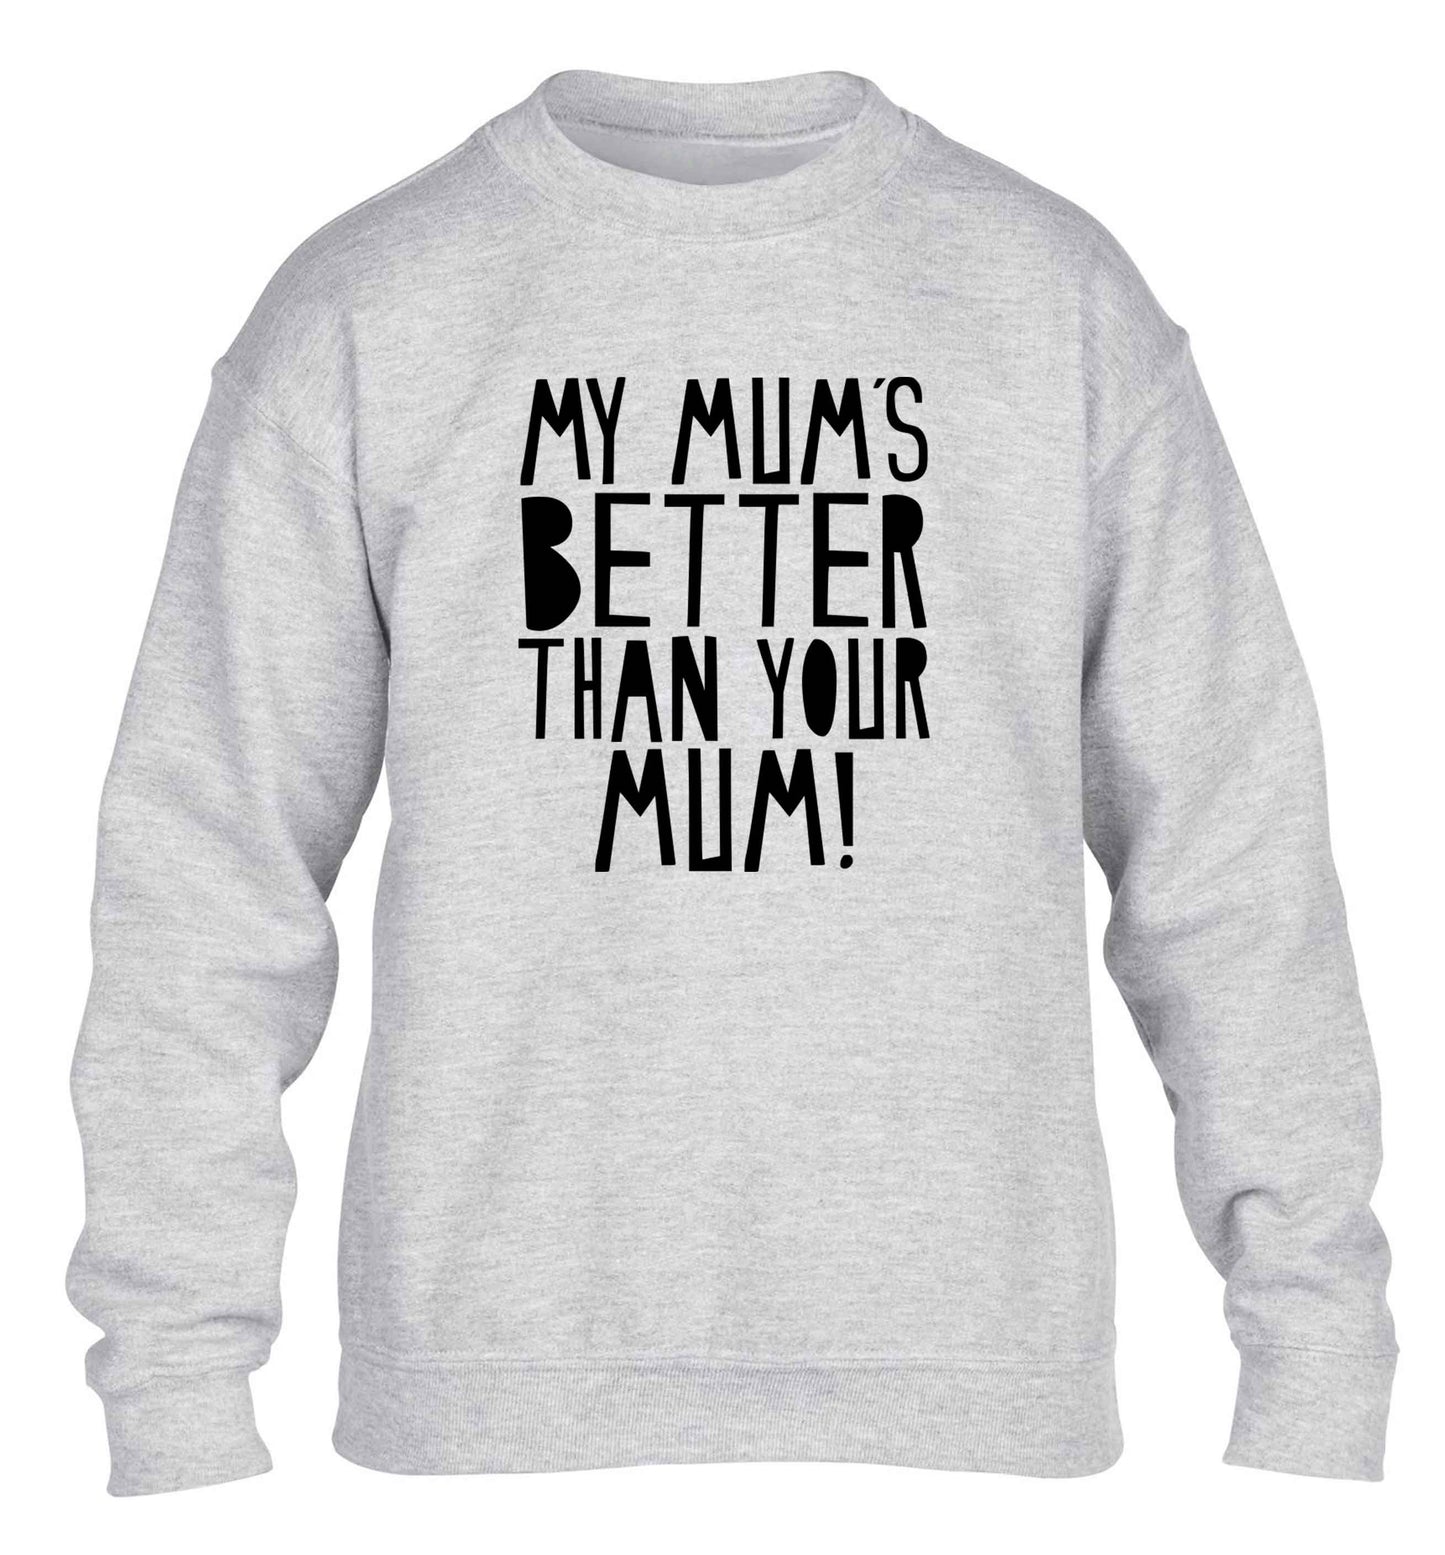 My mum's better than your mum children's grey sweater 12-13 Years